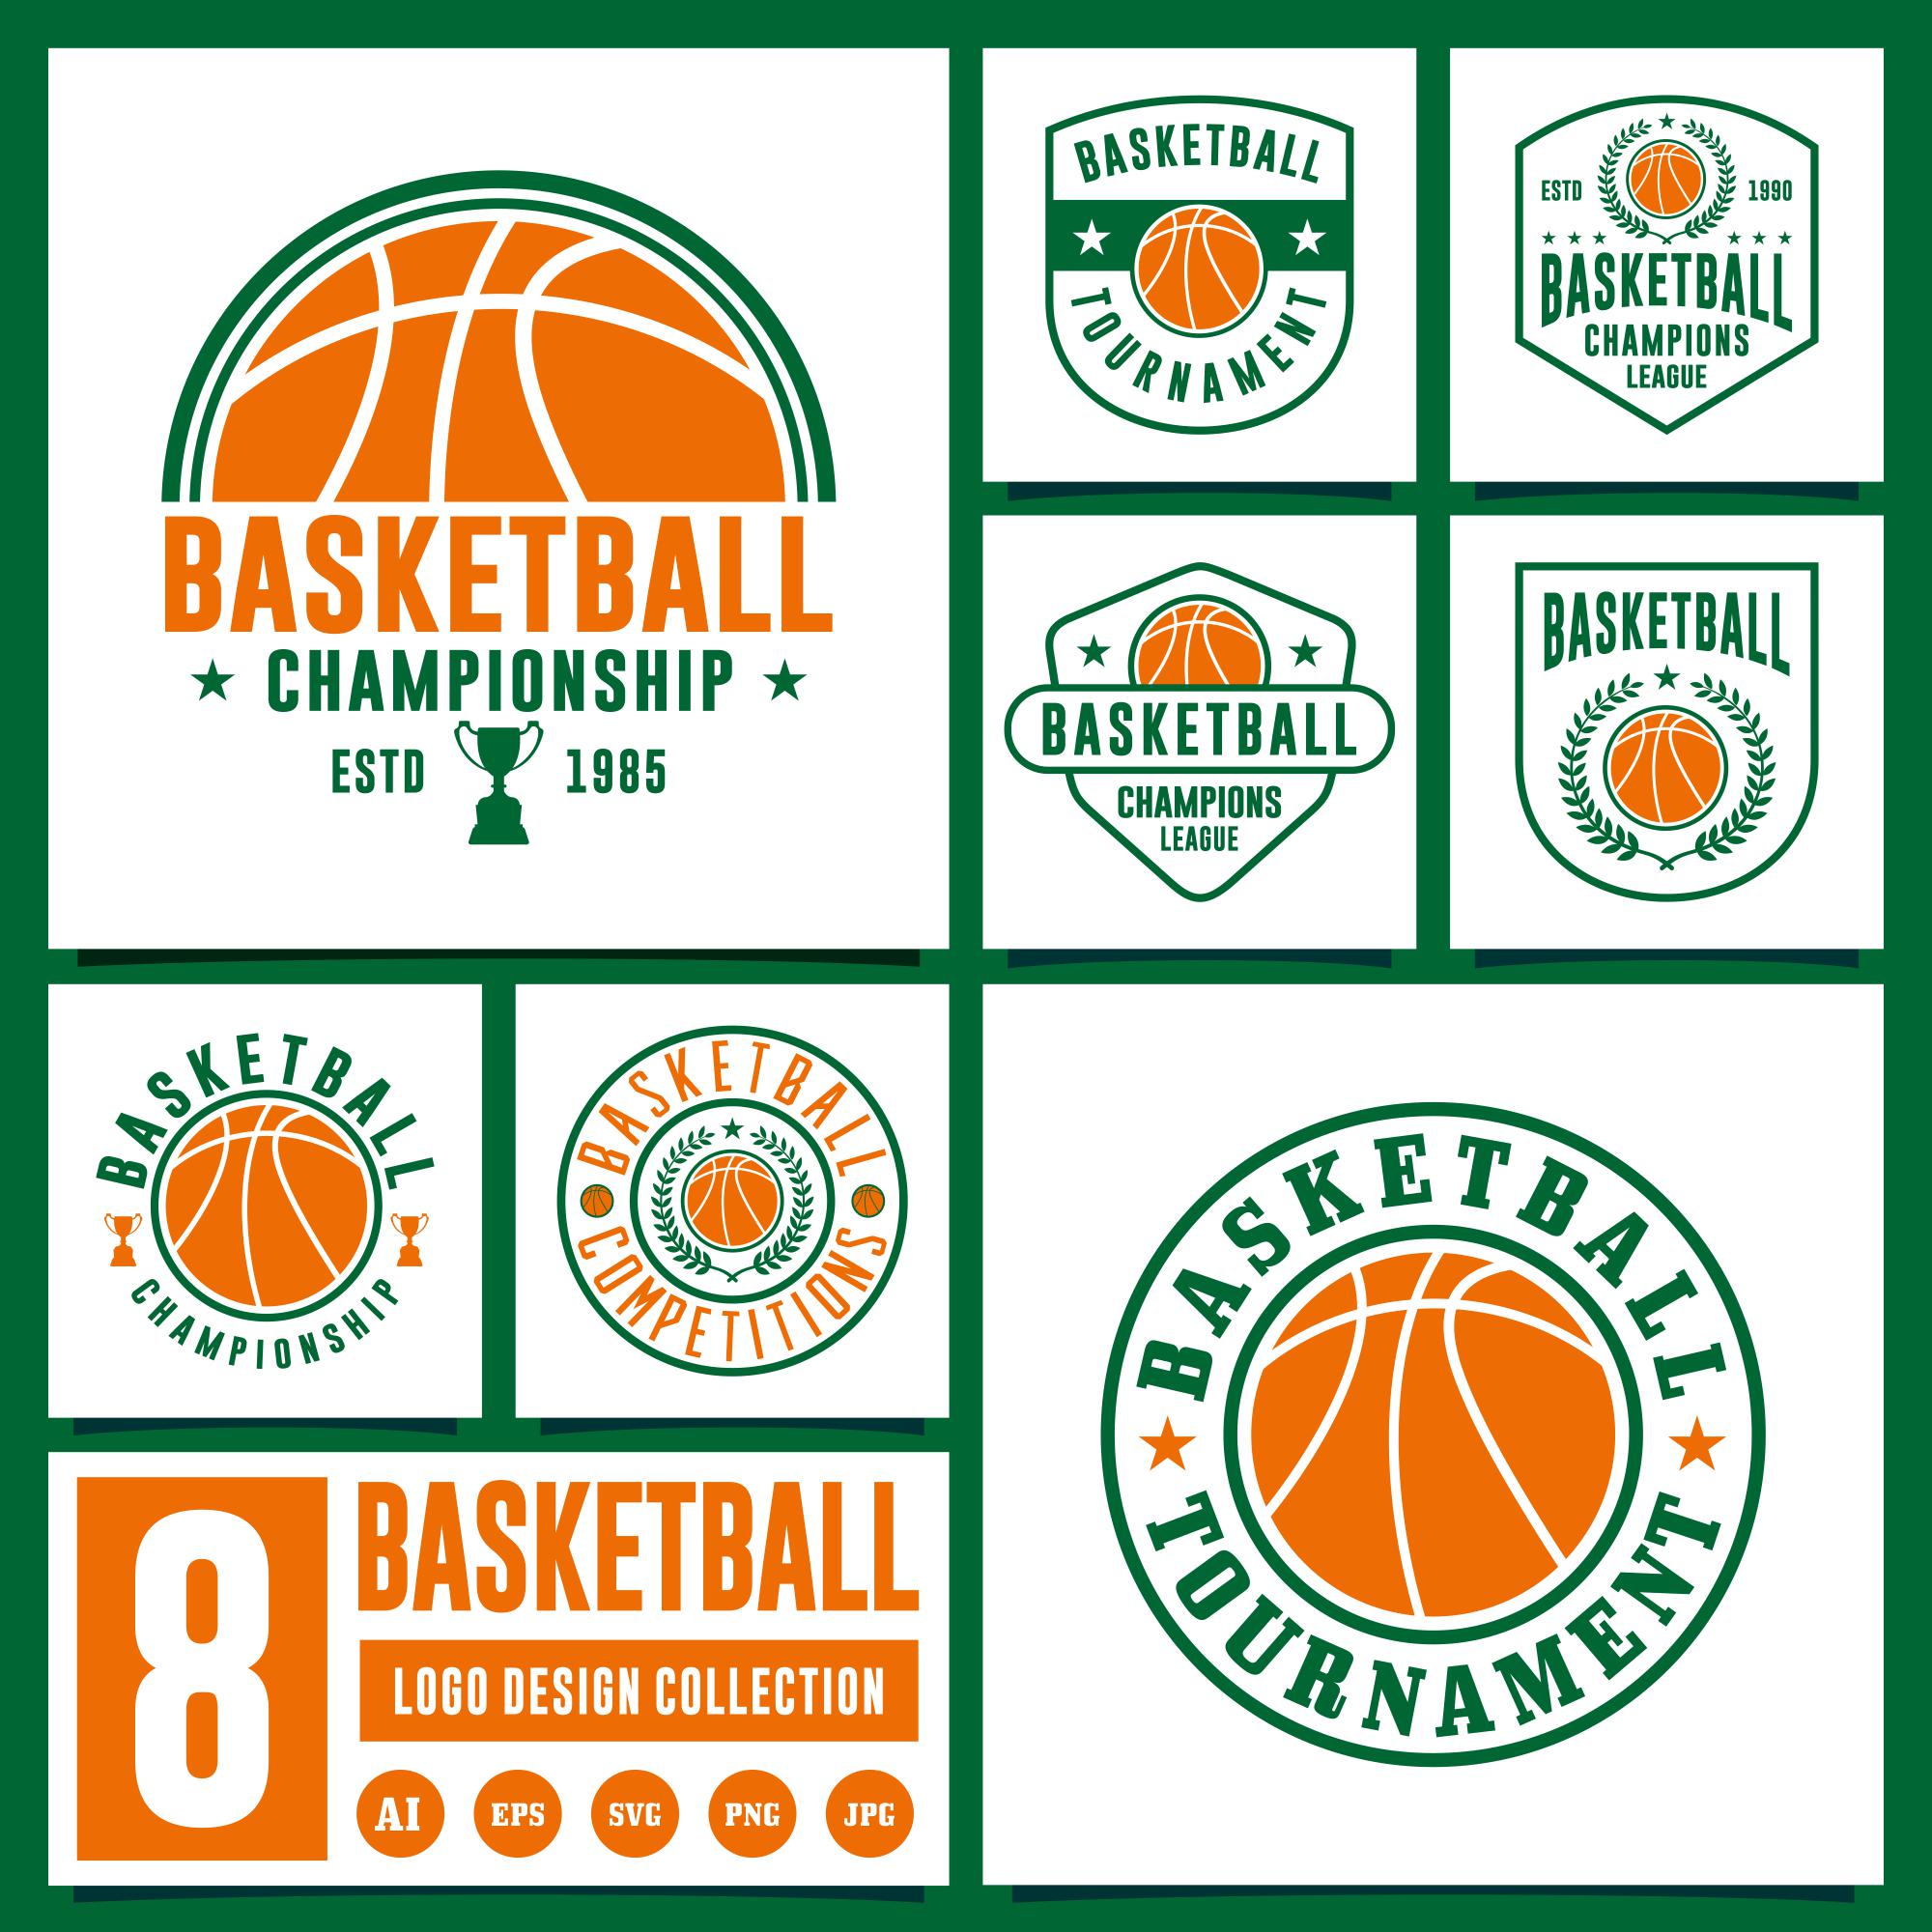 8 Basketball logo design collection cover image.